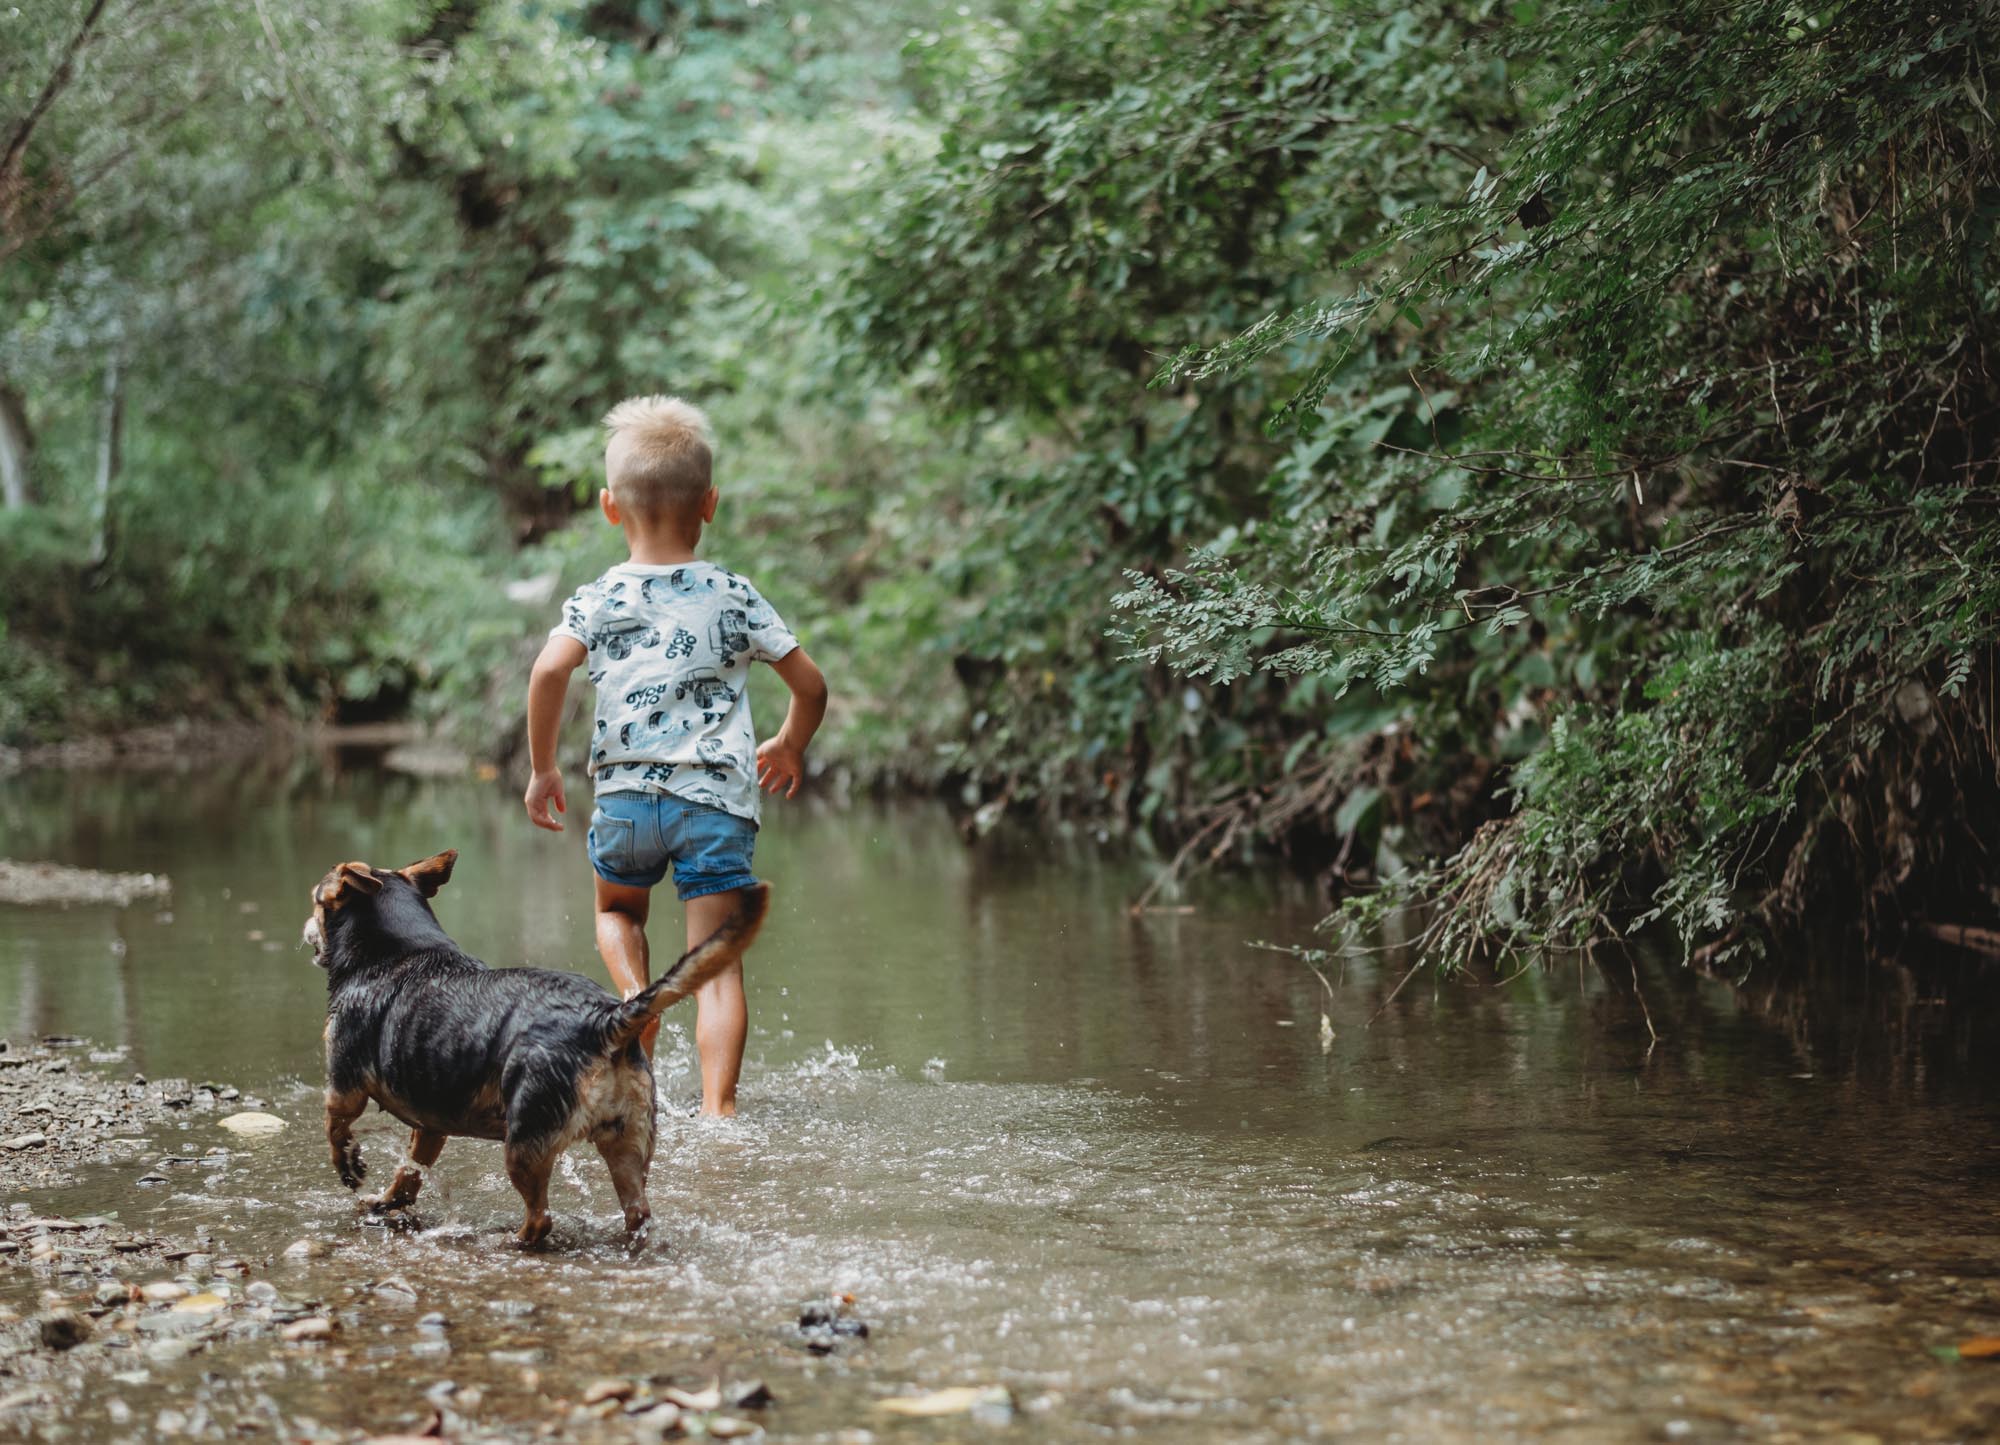 Familienreportage_Kind läuft mit Hund durchs Wasser